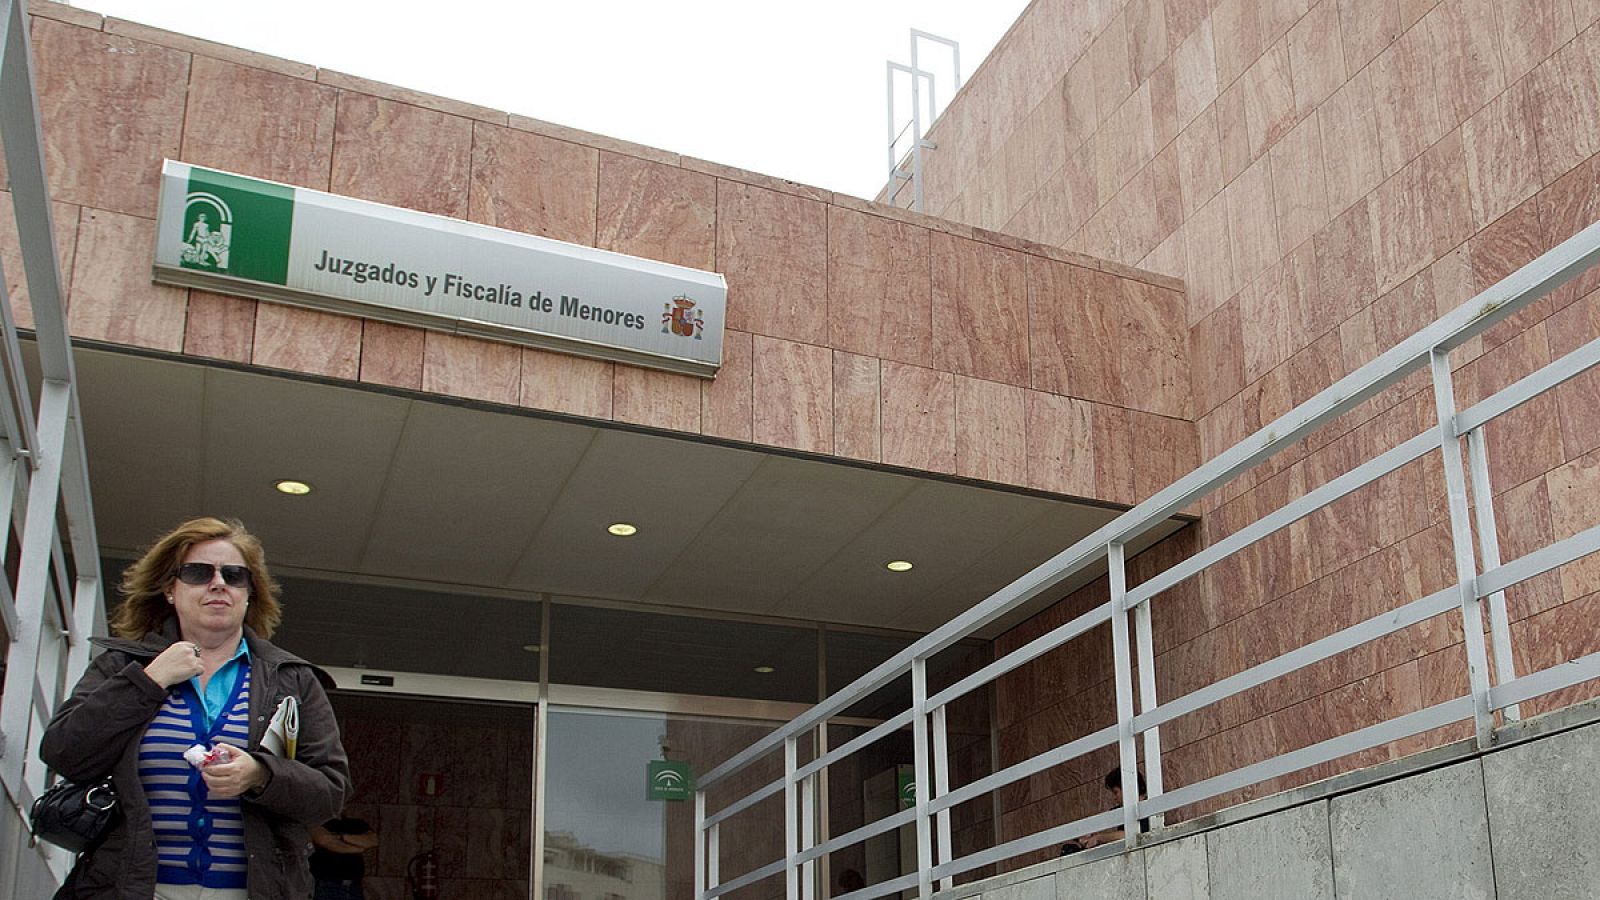 Entrada de los juzgados y fiscalia de menores de la Ciudad de la Justicia de Málaga